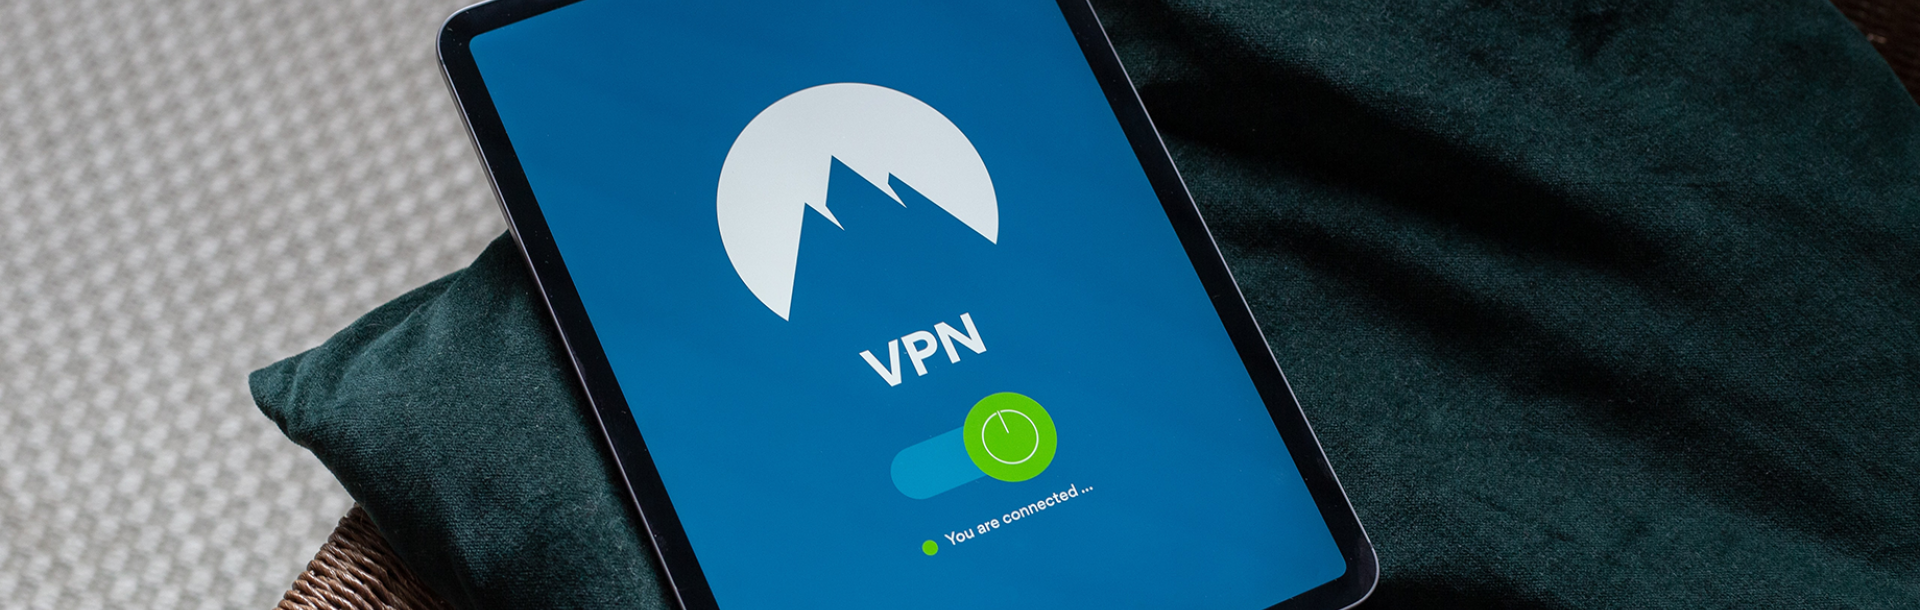 שירות ה-VPN הנוכחי של חברת סיסקו ימשיך להיות זמין עד ה-30 לספטמבר 2021. צרפנו עבורכם כאן הסבר לגבי השירות החדש של חברת פאלו אלטו
